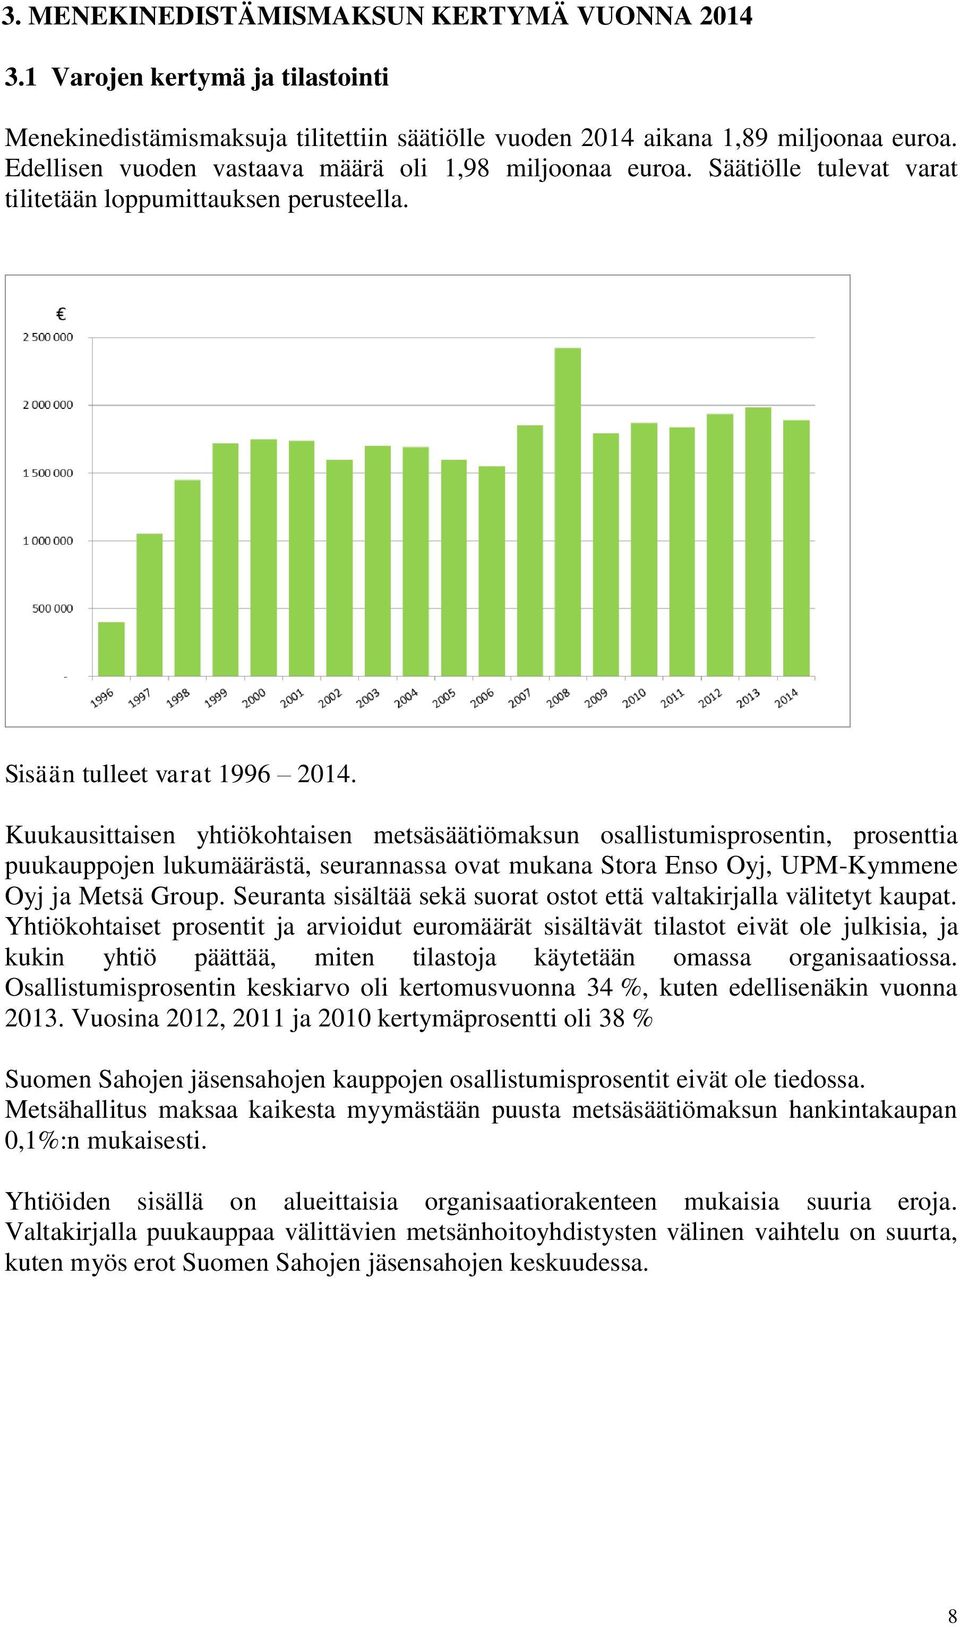 Kuukausittaisen yhtiökohtaisen metsäsäätiömaksun osallistumisprosentin, prosenttia puukauppojen lukumäärästä, seurannassa ovat mukana Stora Enso Oyj, UPM-Kymmene Oyj ja Metsä Group.